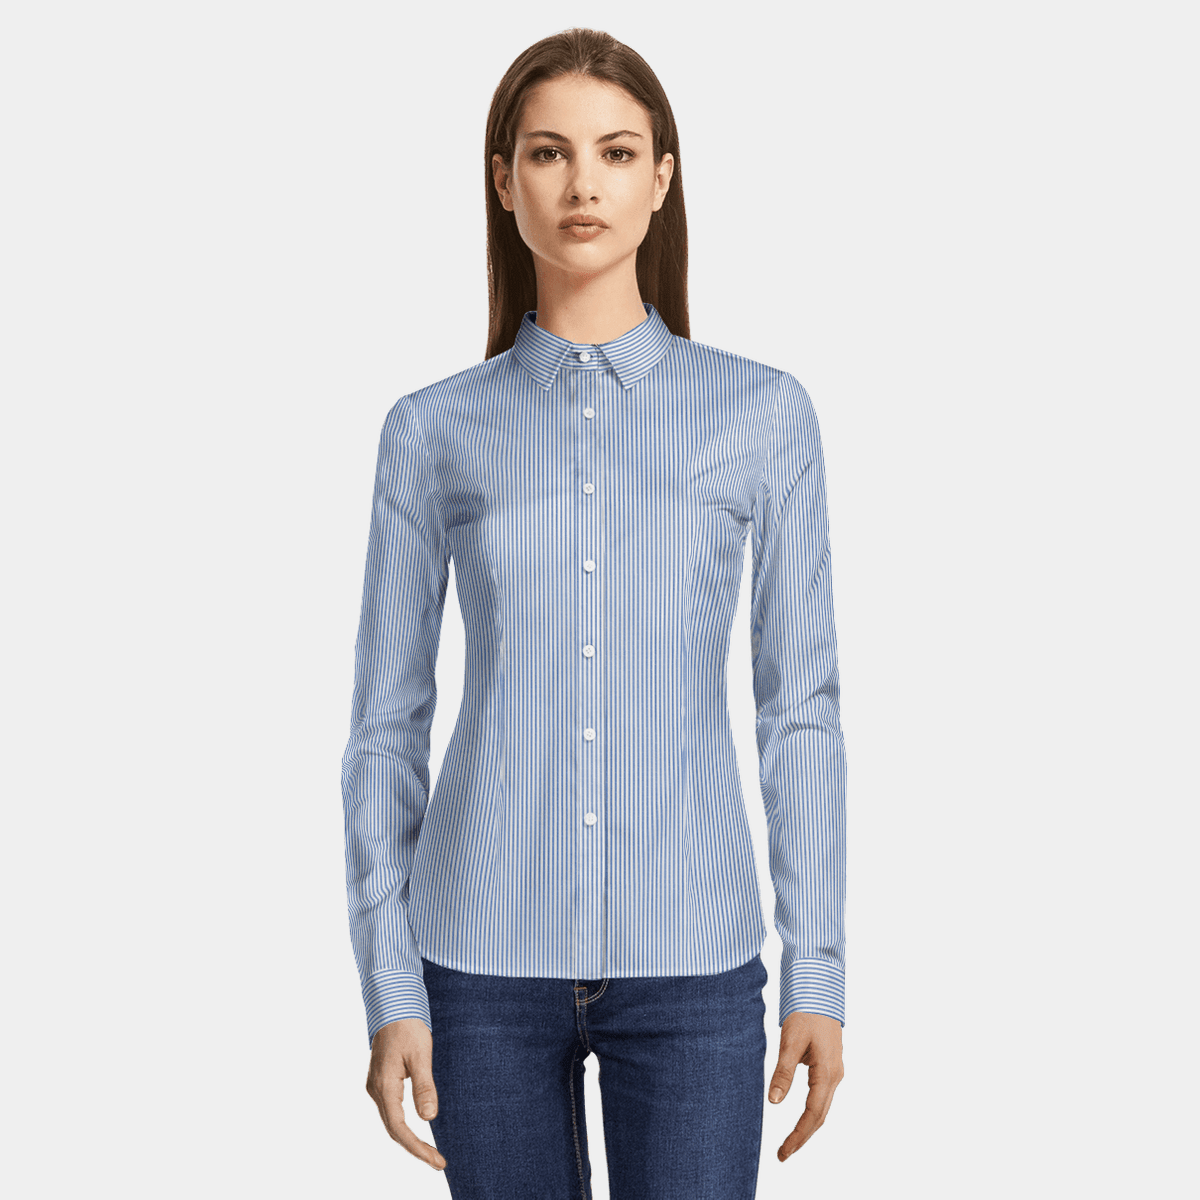 navy blue striped dress shirt